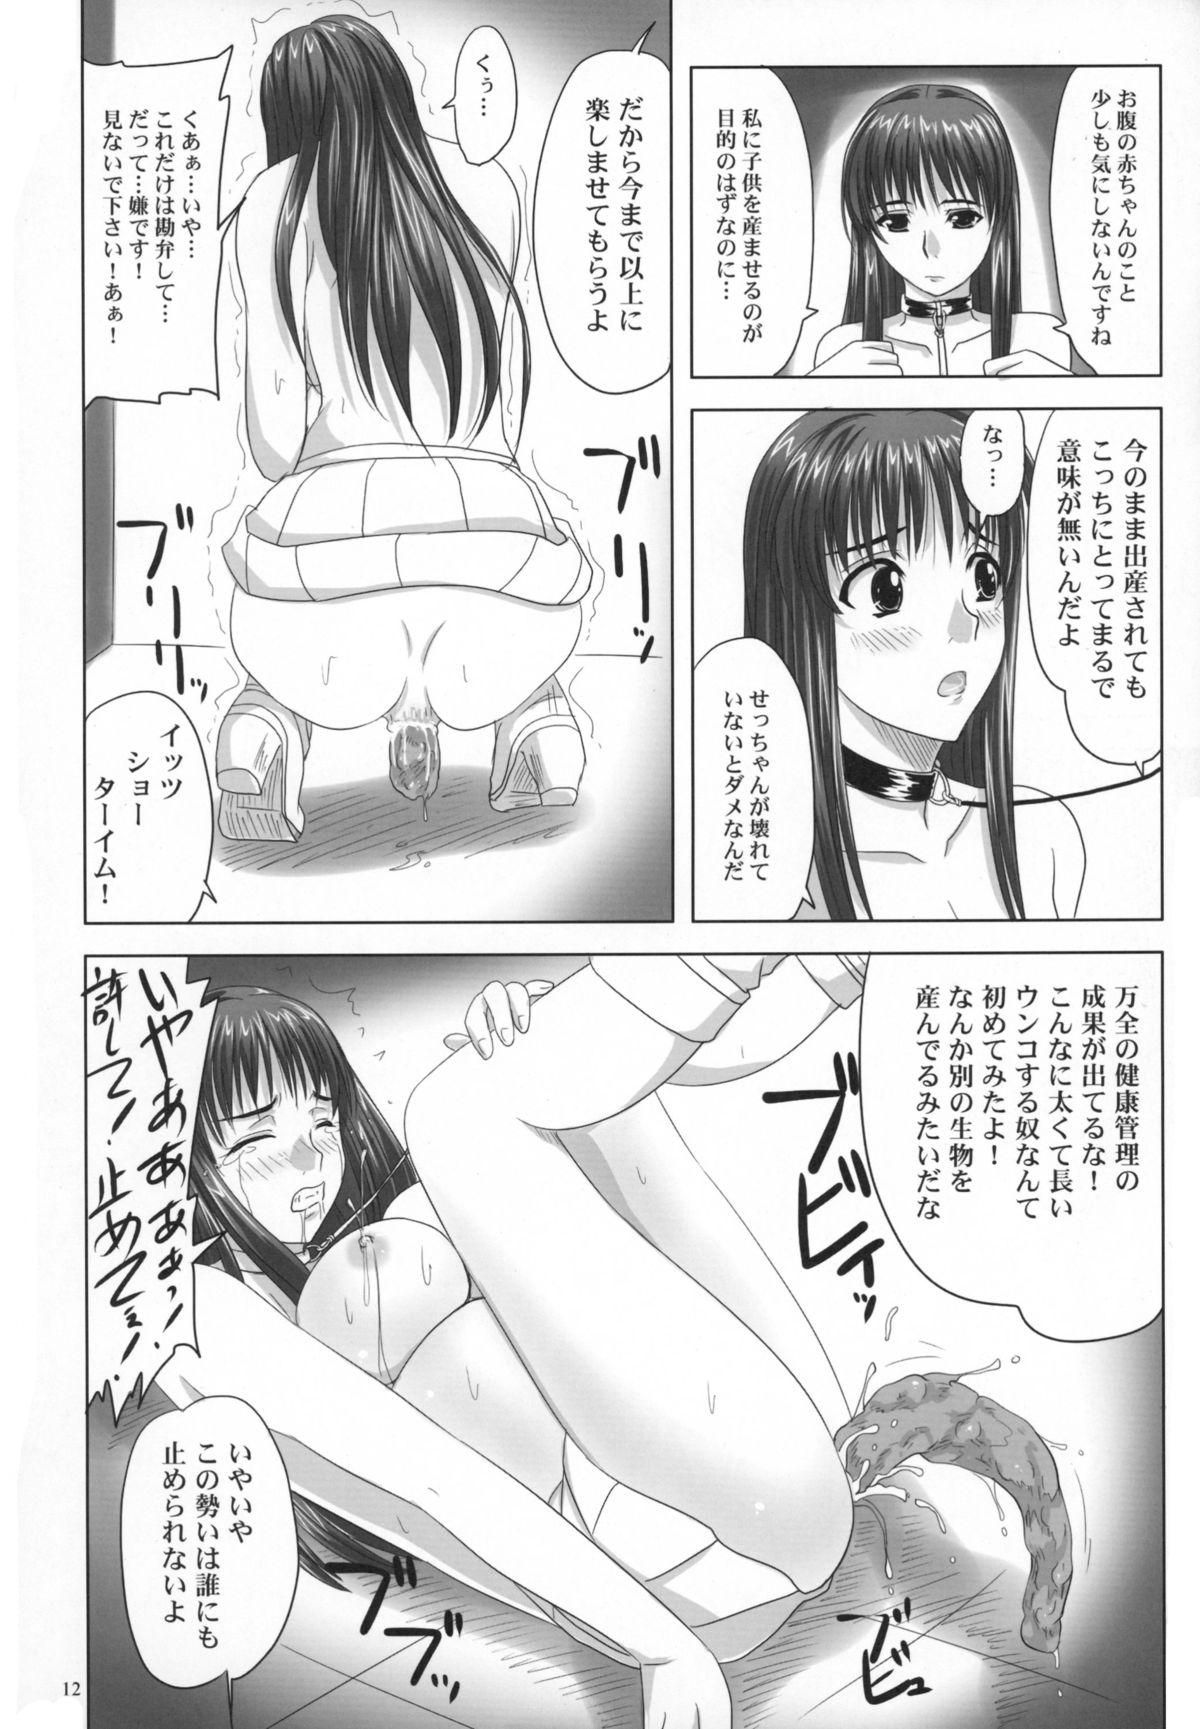 Fucks Daishiji SuuRobo Heroine Daisakusen - Super robot wars Holes - Page 12